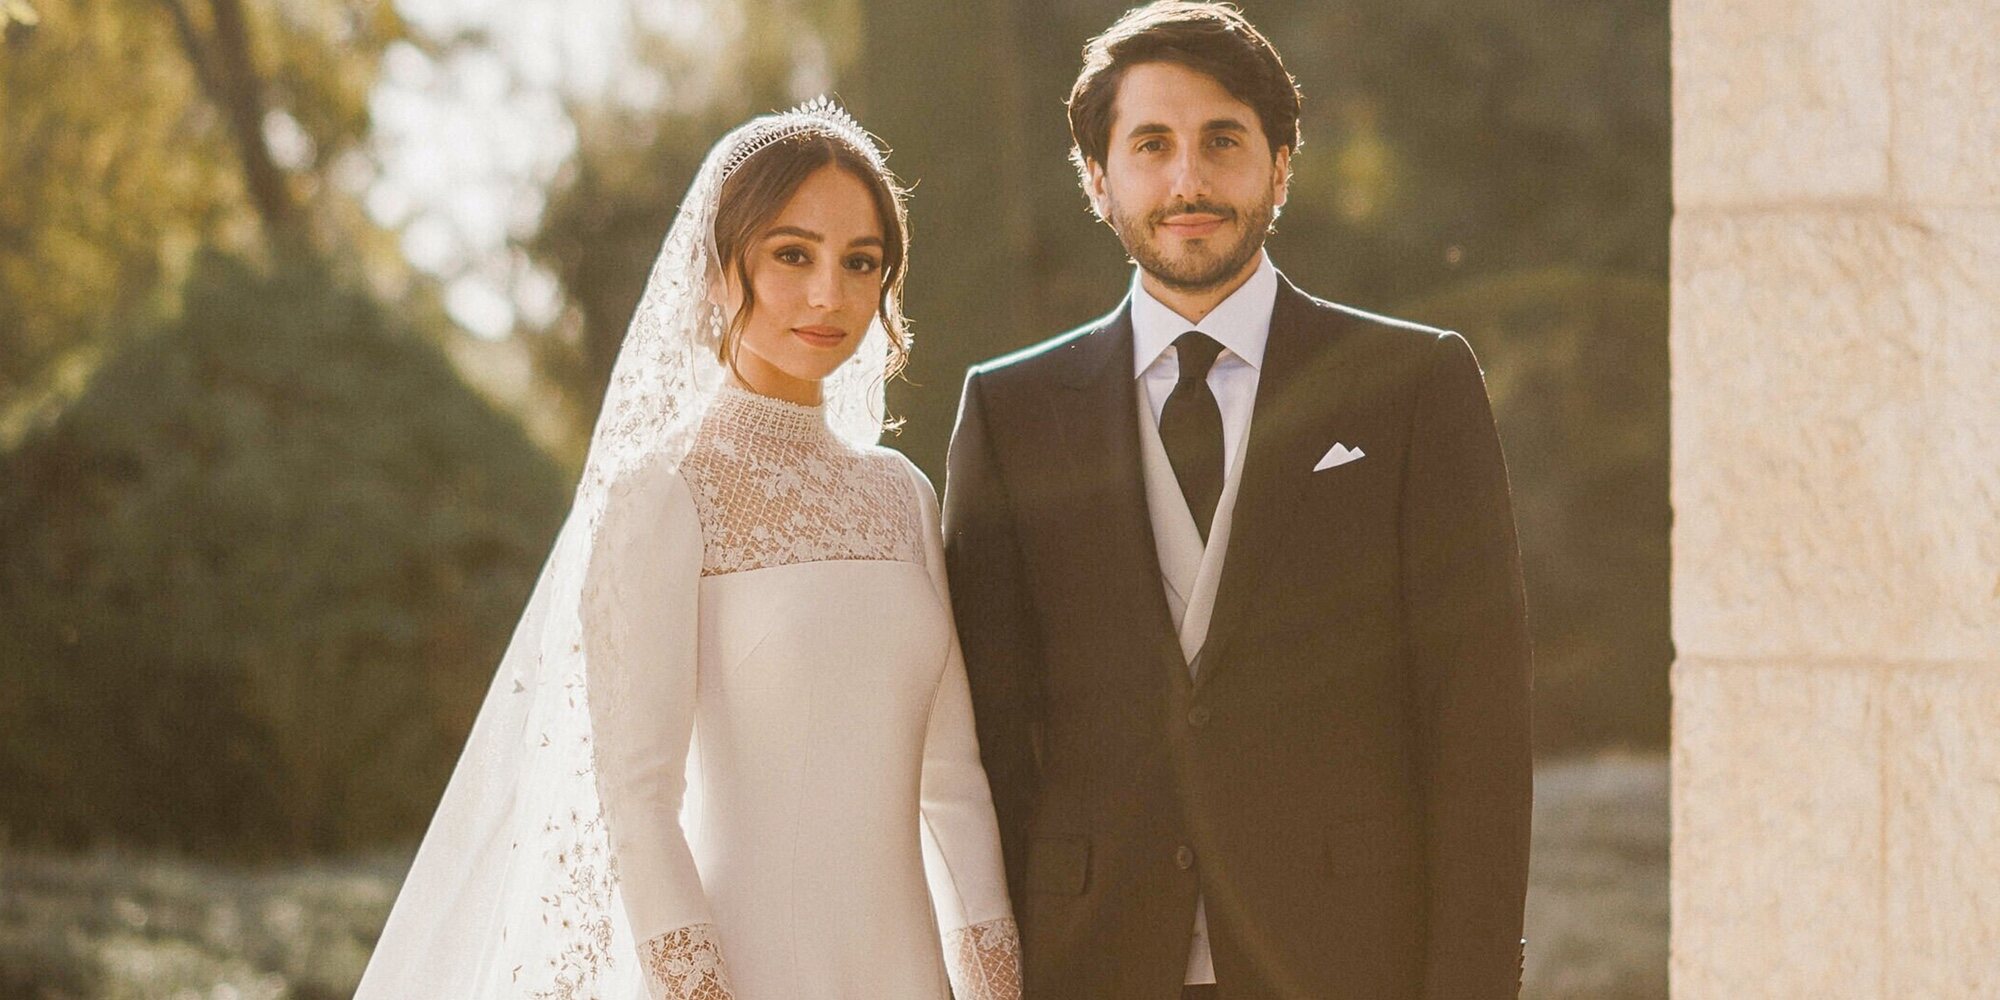 La boda de Iman de Jordania y Jameel Alexander Thermiotis: fotos oficiales, paz familiar y una española